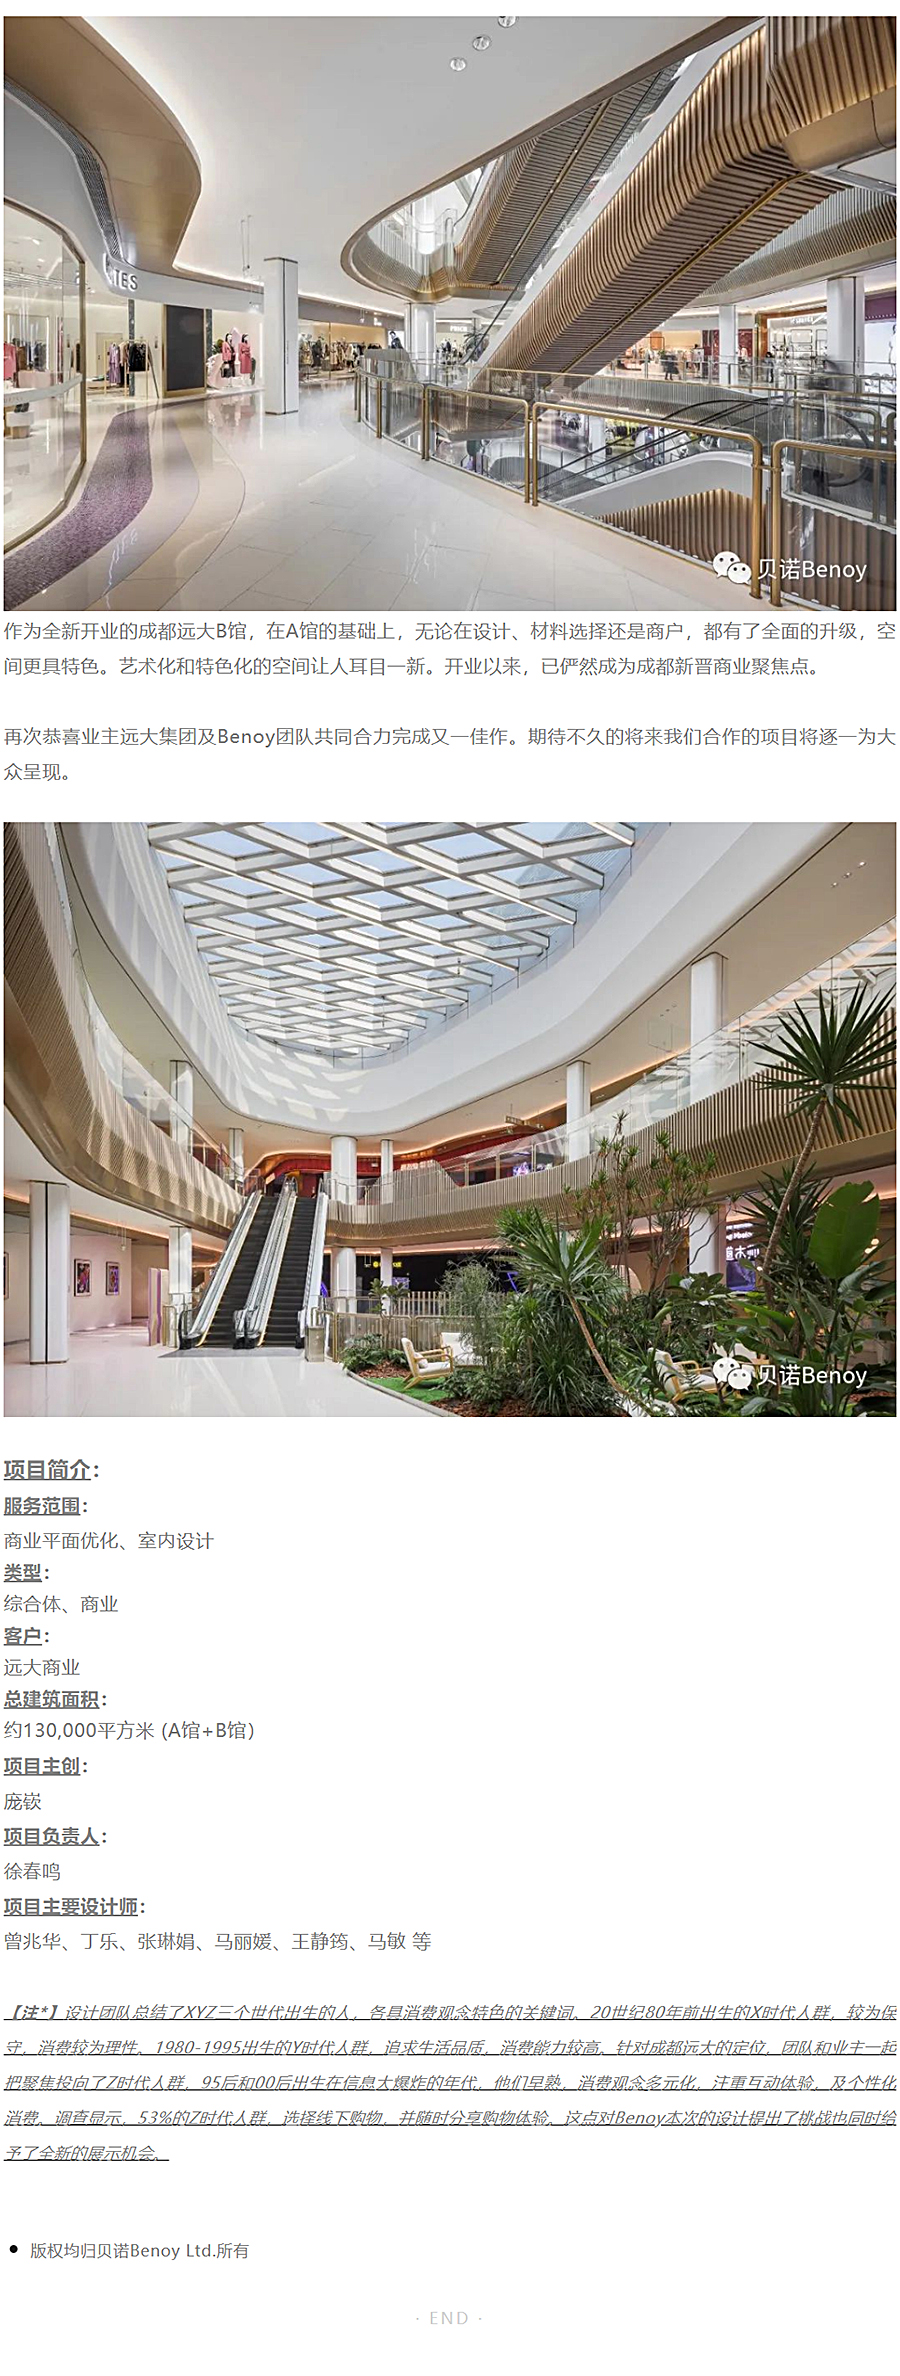 天府中轴新中心-_-成都远大购物中心_0008_图层-9.jpg